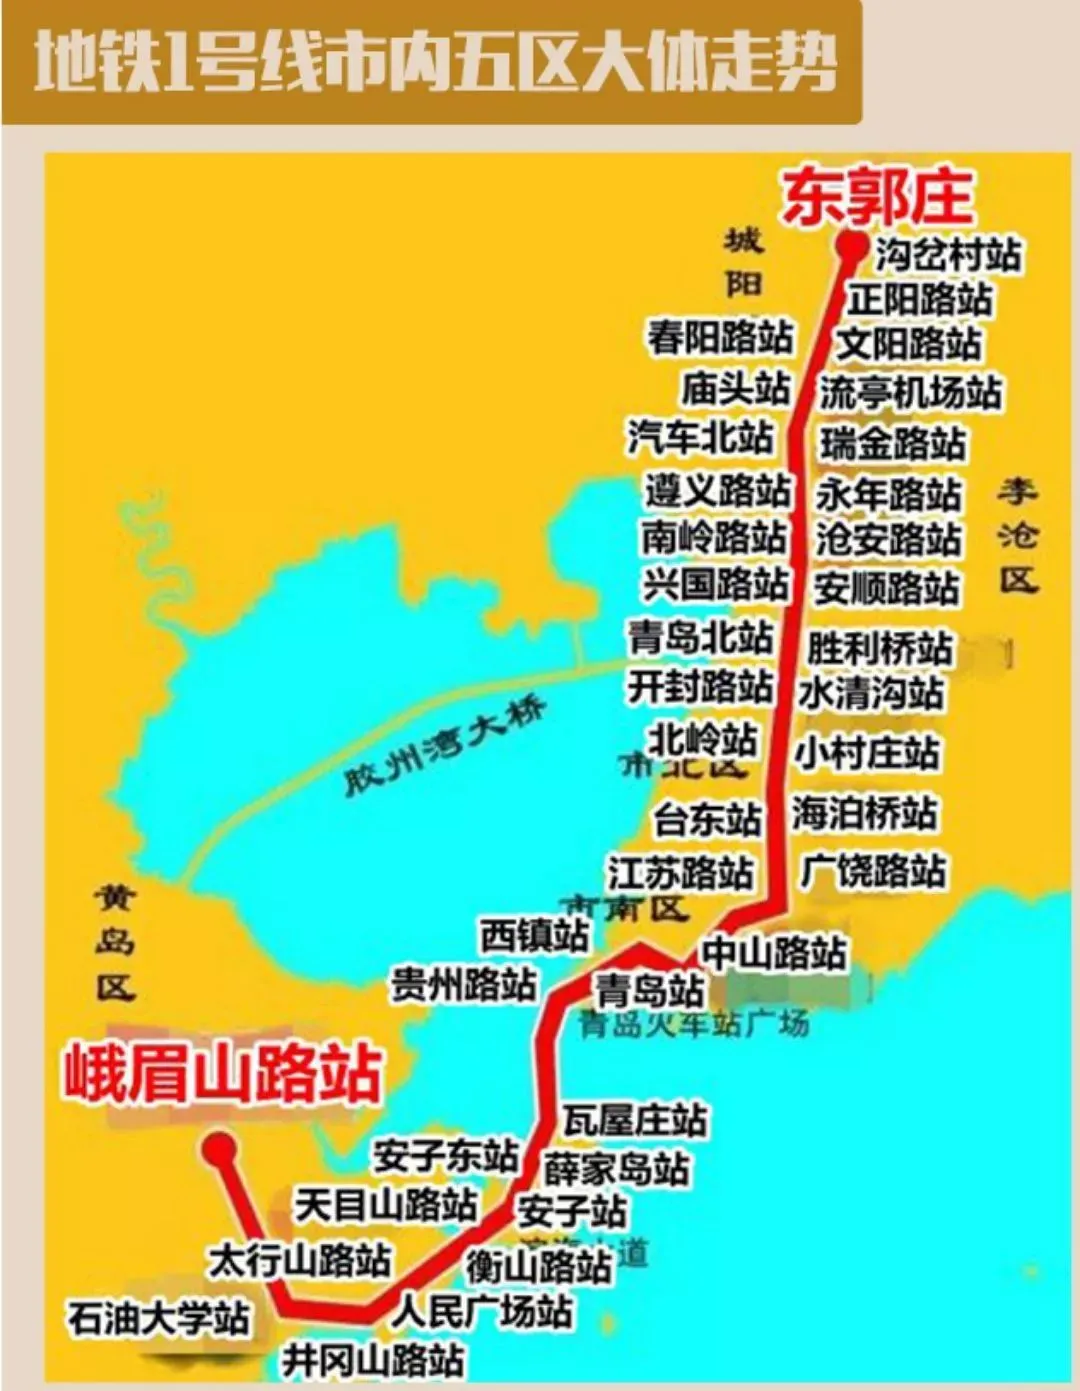 城阳地铁1号线线路图图片